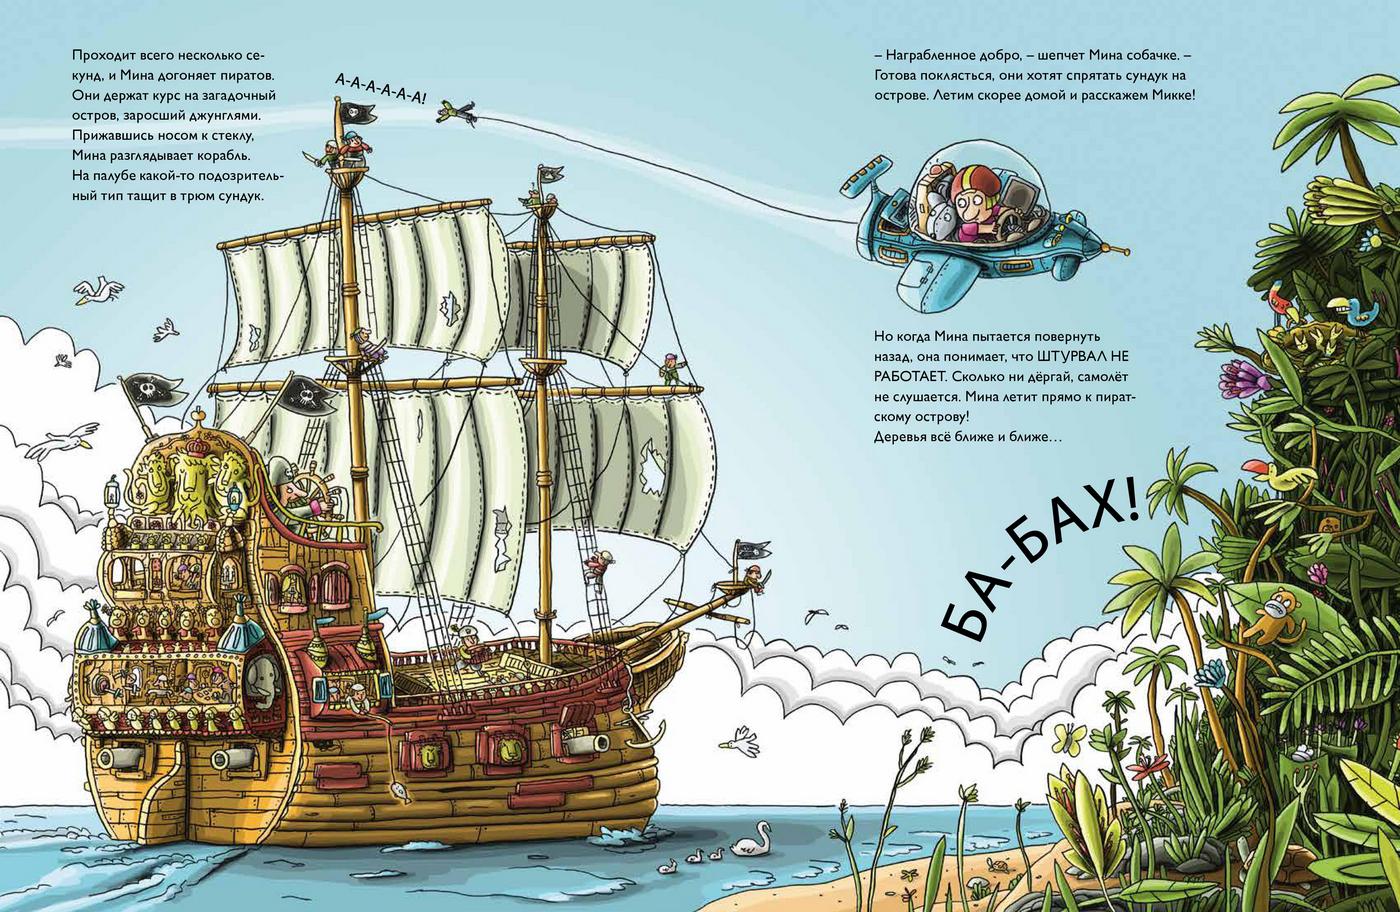 Книги про приключения пиратов. Турсон ч. "пираты в джунглях". Книги о пиратах и приключениях. Турсон чель "тайна темных гор". Приключения пиратов книга для детей.